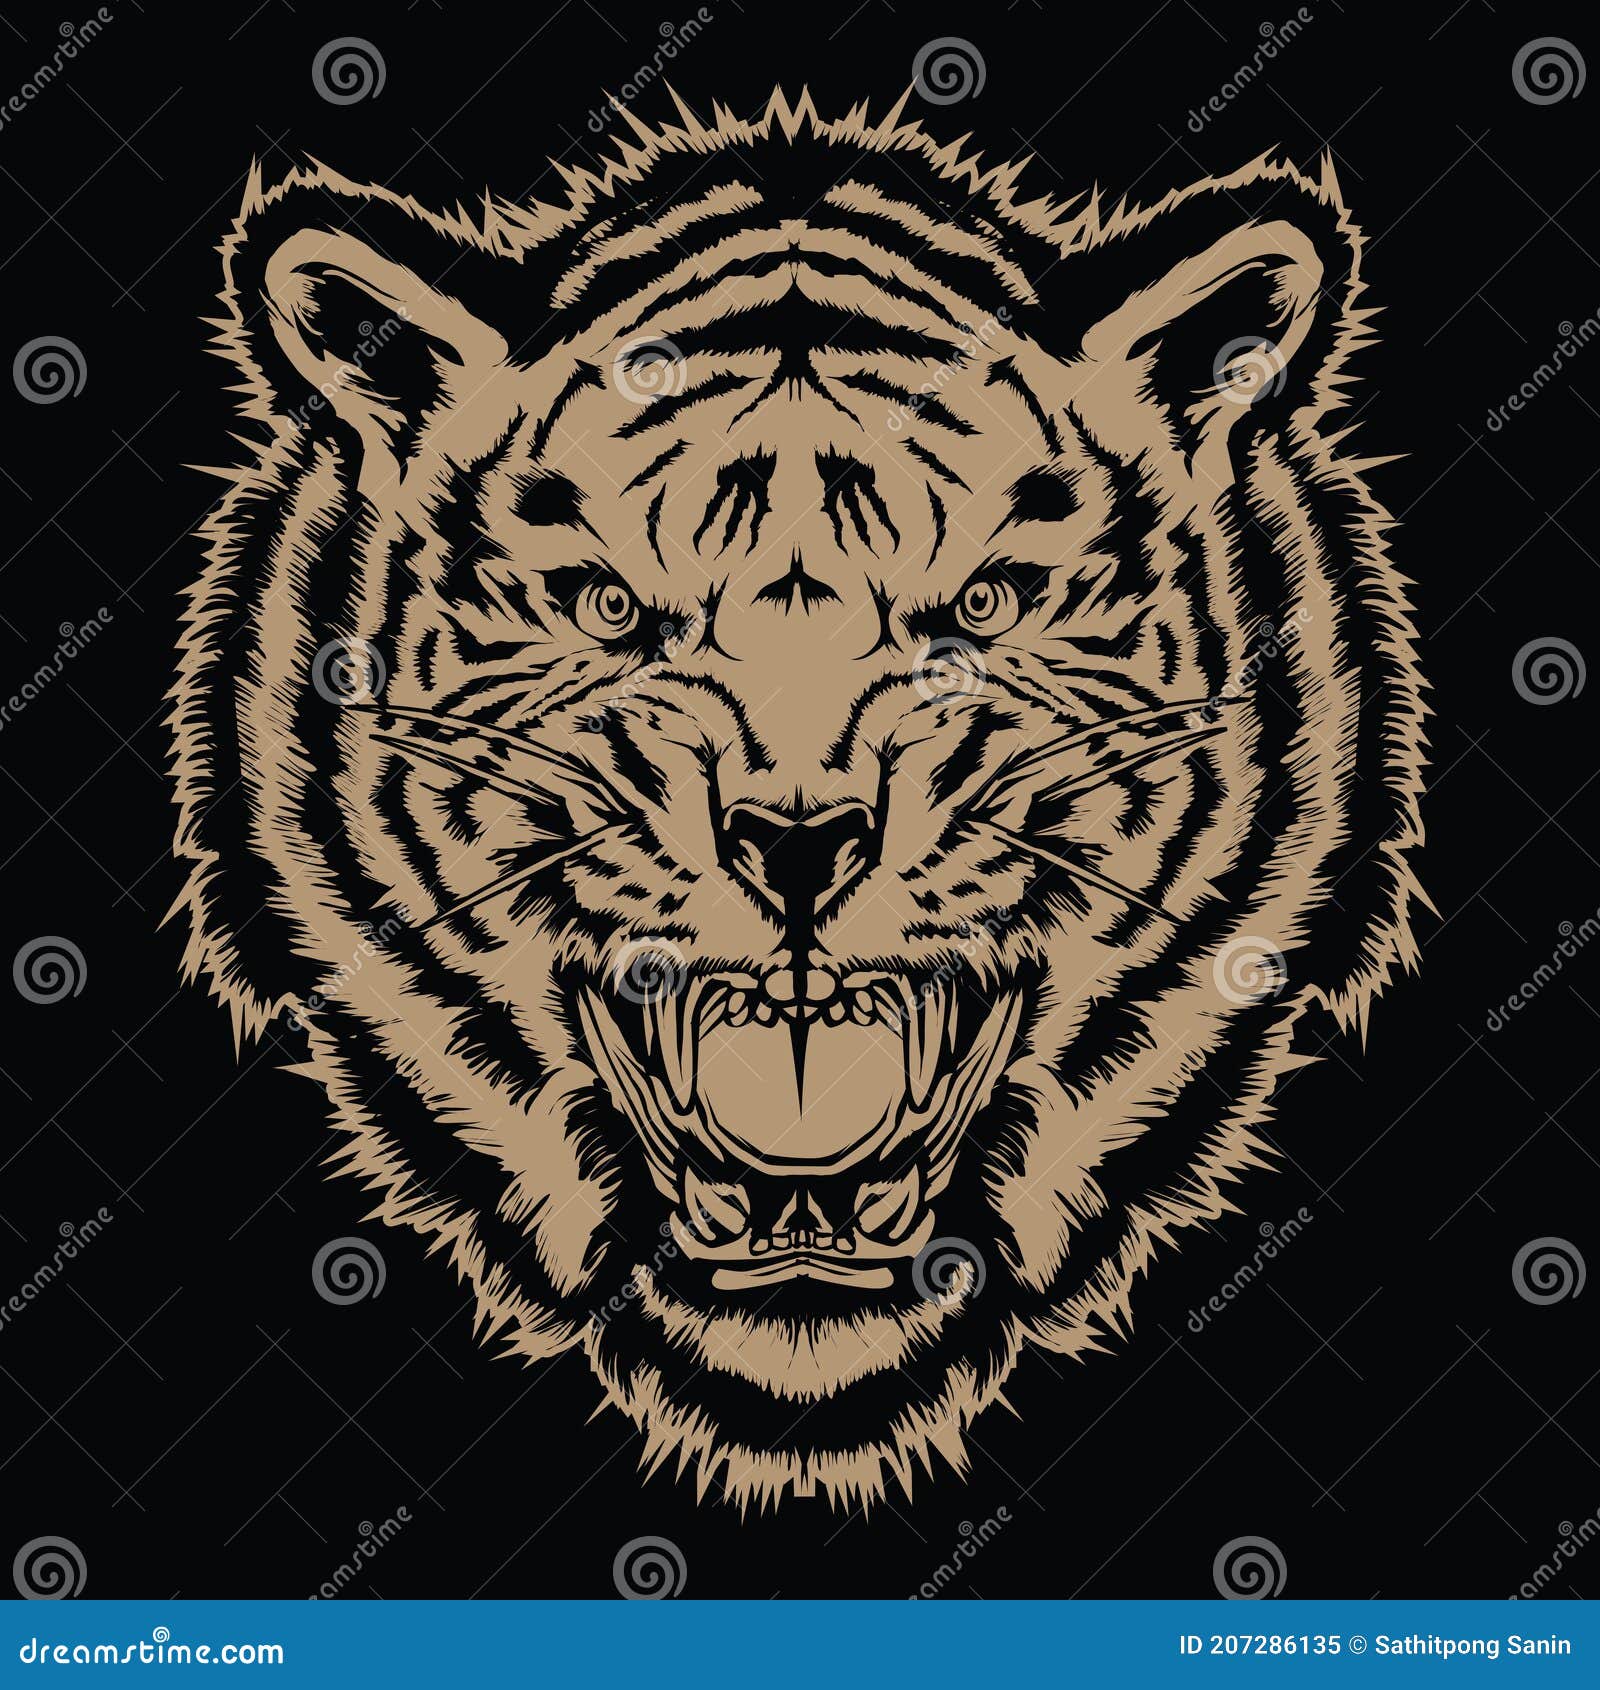 Tiger Angry Tiger Face Tiger Head King Tiger Tattoo Vector Illustration  Stock Vector - Illustration of pistol, engraving: 207286135